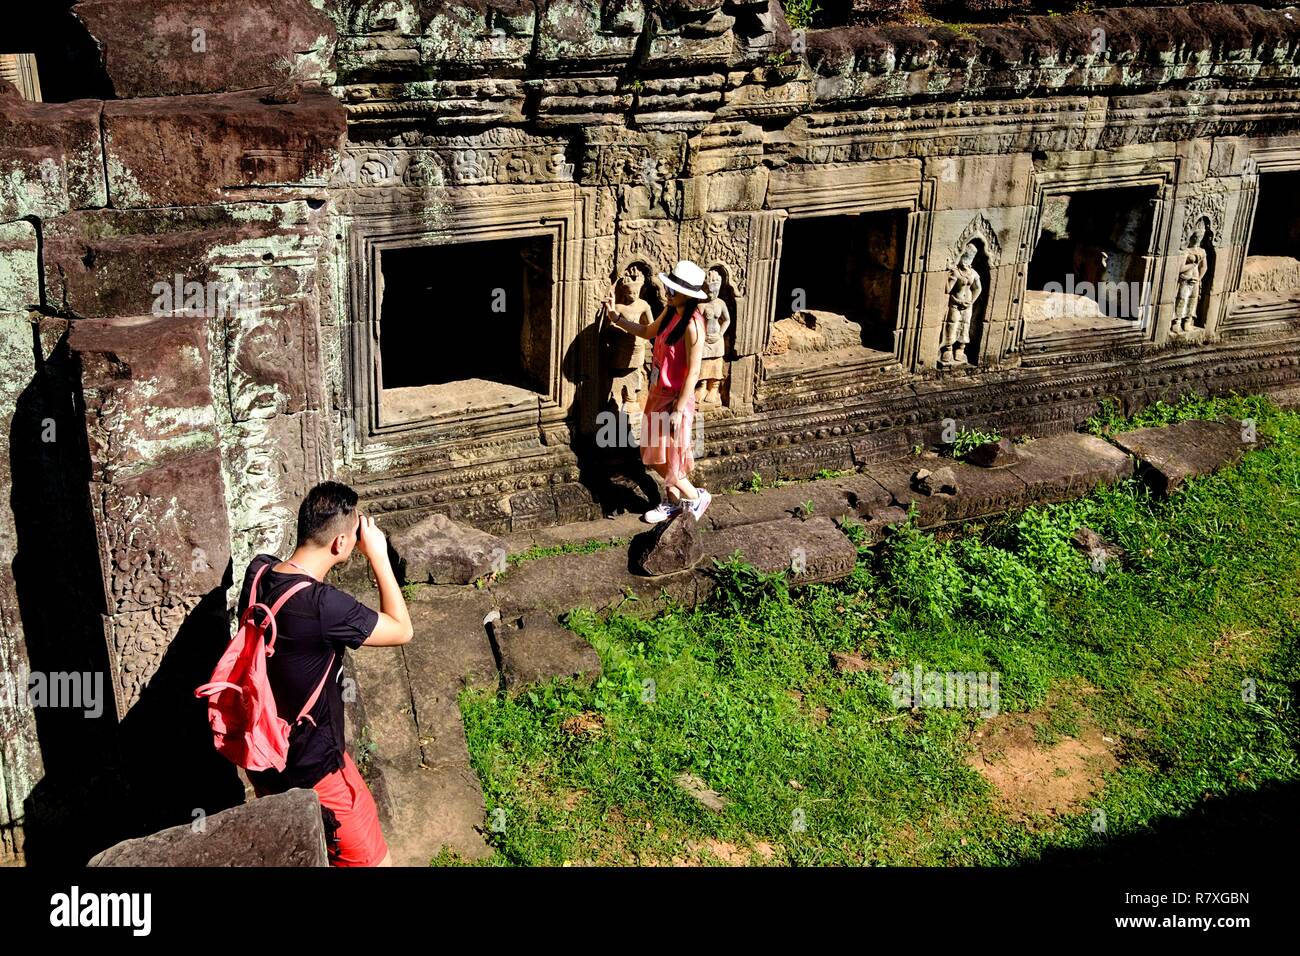 Kambodscha, Angkor als Weltkulturerbe der UNESCO, Preah Khan von Angkor, im Jahre 1191 von König Jayavarman VII gebaut aufgeführt Stockfoto